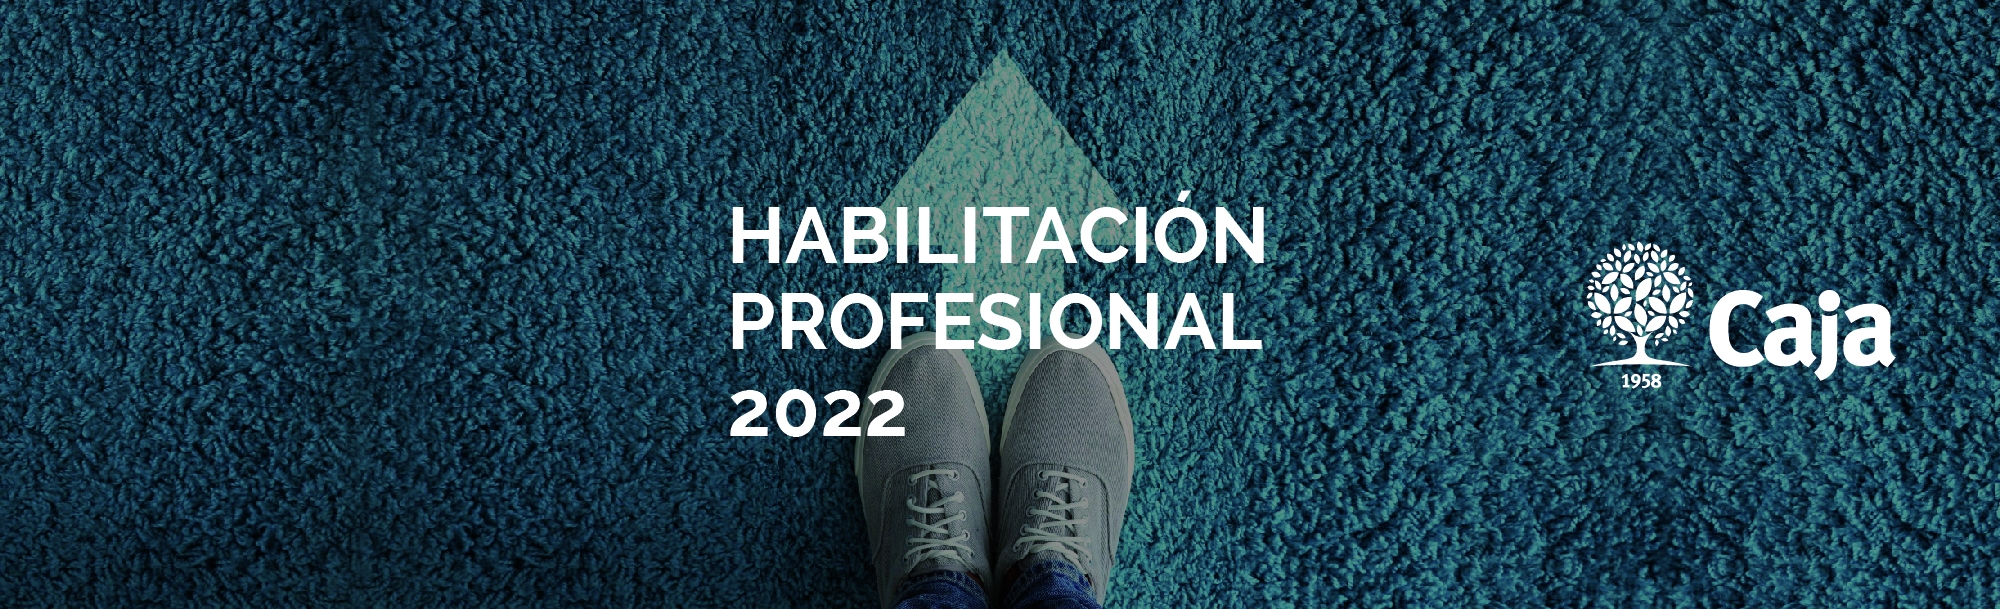 Habilitación Profesional 2022